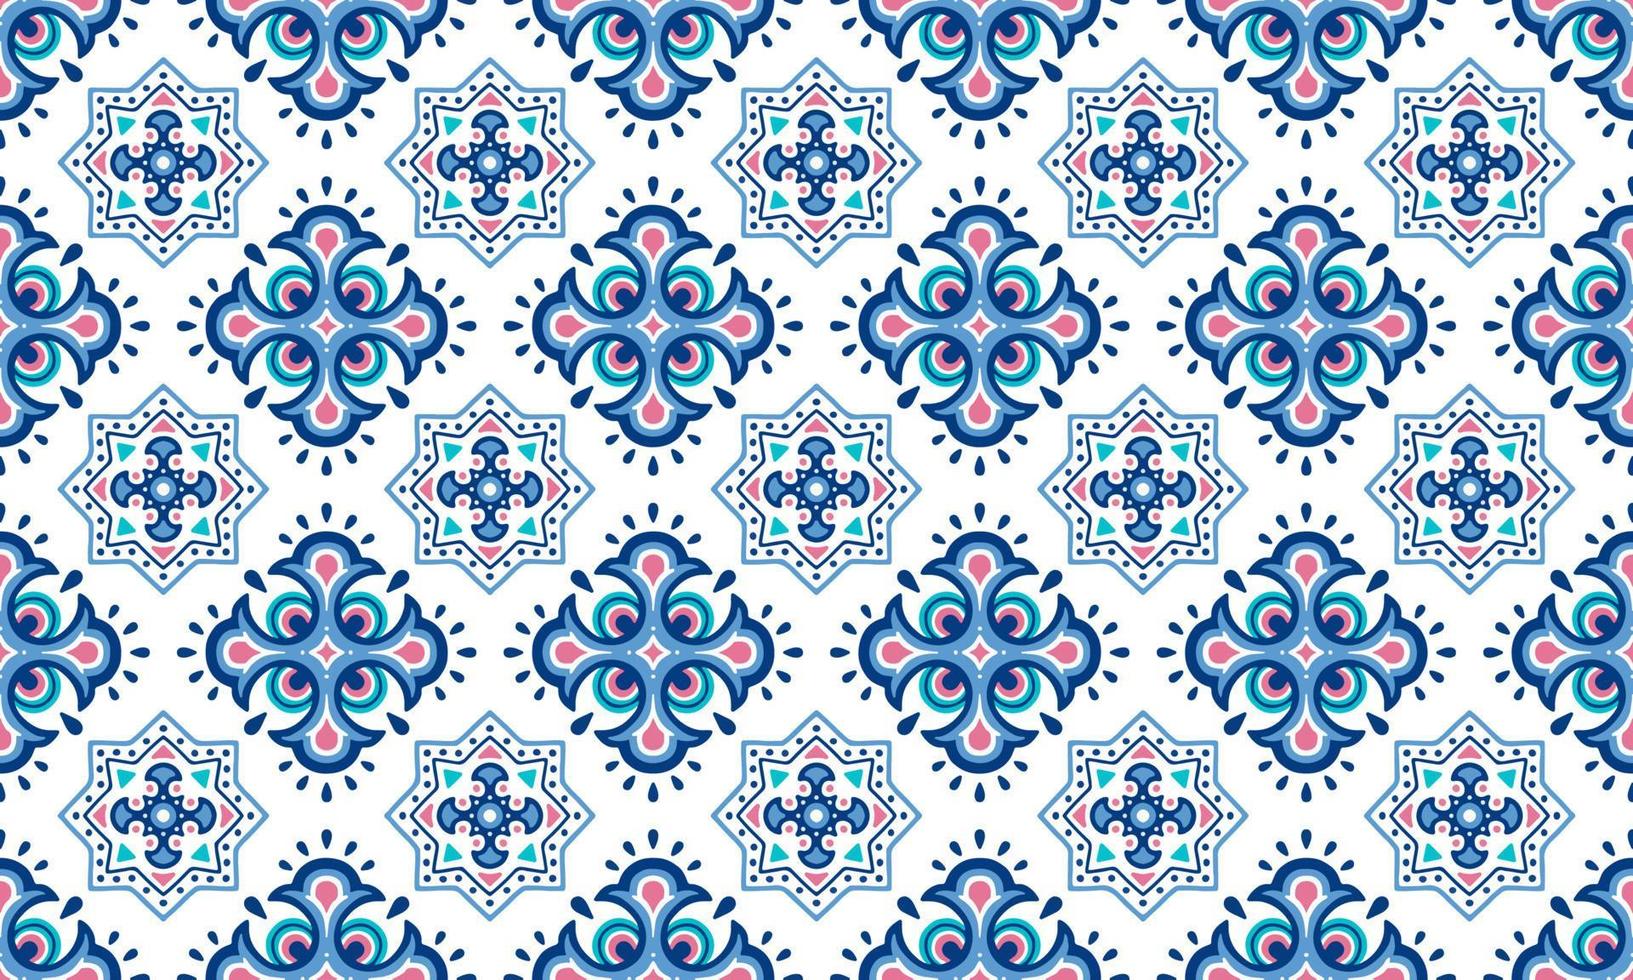 ethnischer abstrakter hintergrund niedlich blau indigo geometrisch tribal ikat volksmotiv arabisch orientalisch einheimisches muster traditionelles design, teppich, tapete, kleidung, stoff, verpackung, druck, batik, volkstümlich, gestrickt, vektor